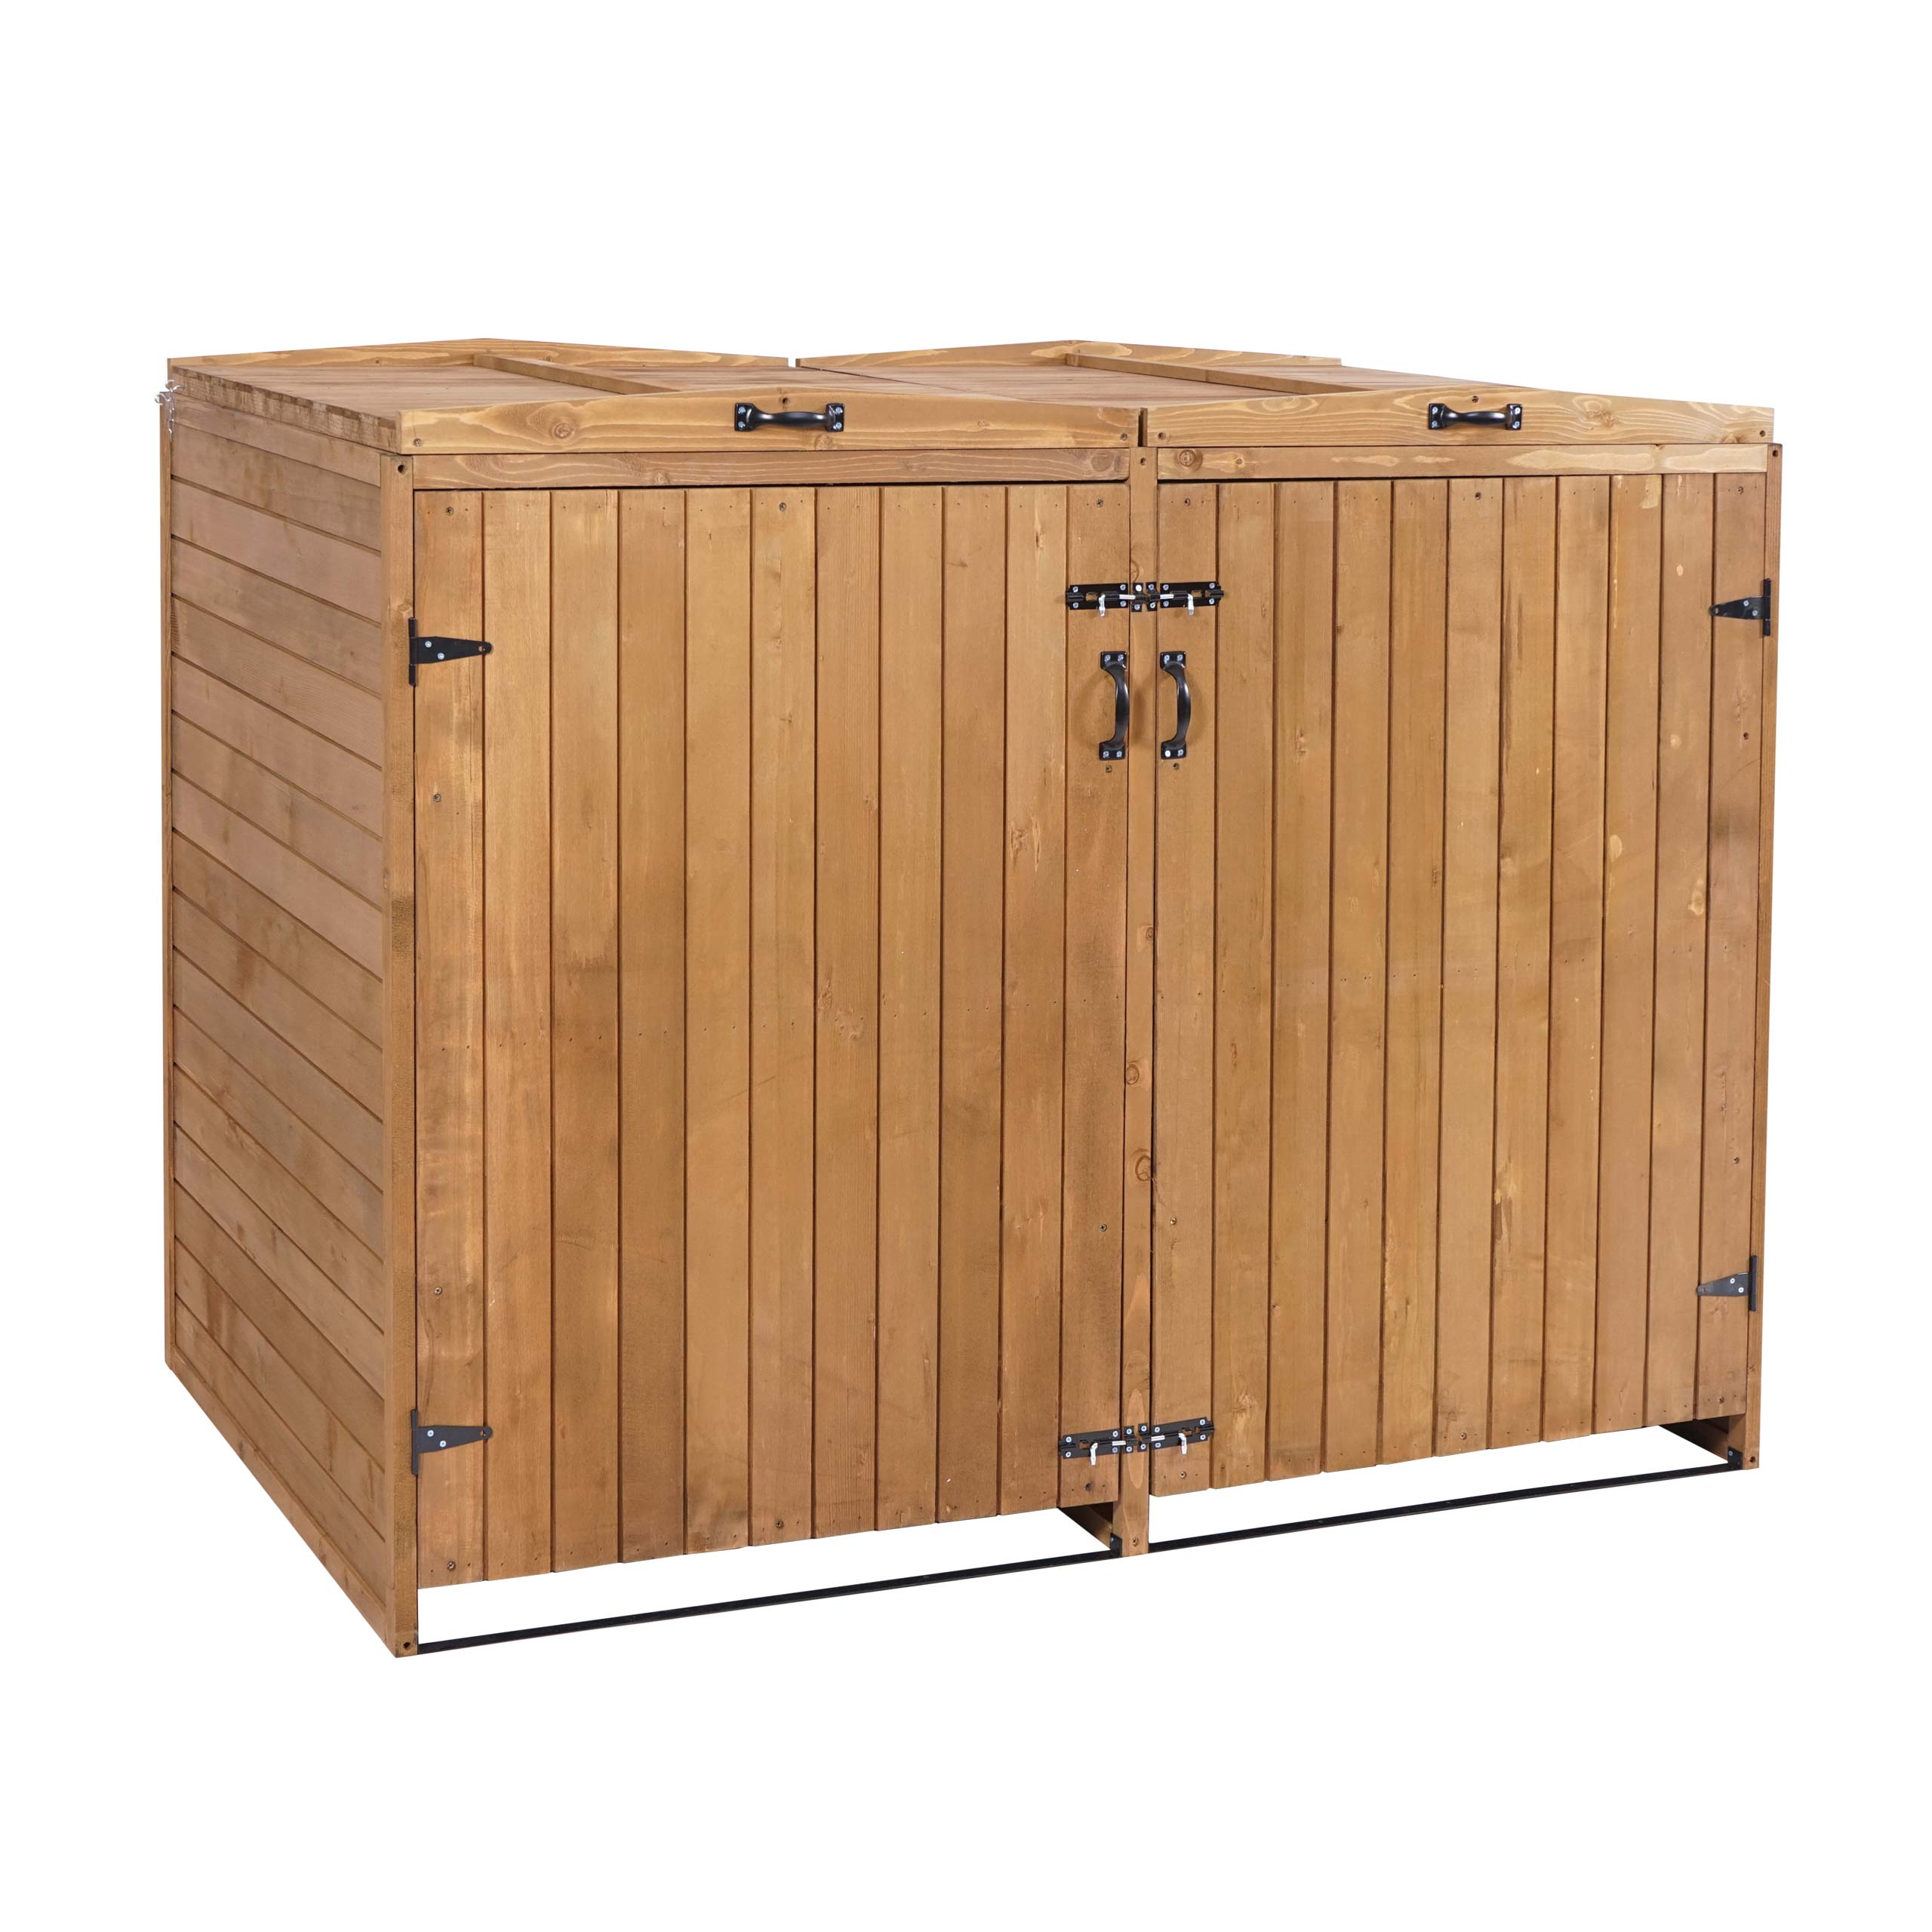 Box copri bidoni spazzatura da esterno in legno con porte di abete